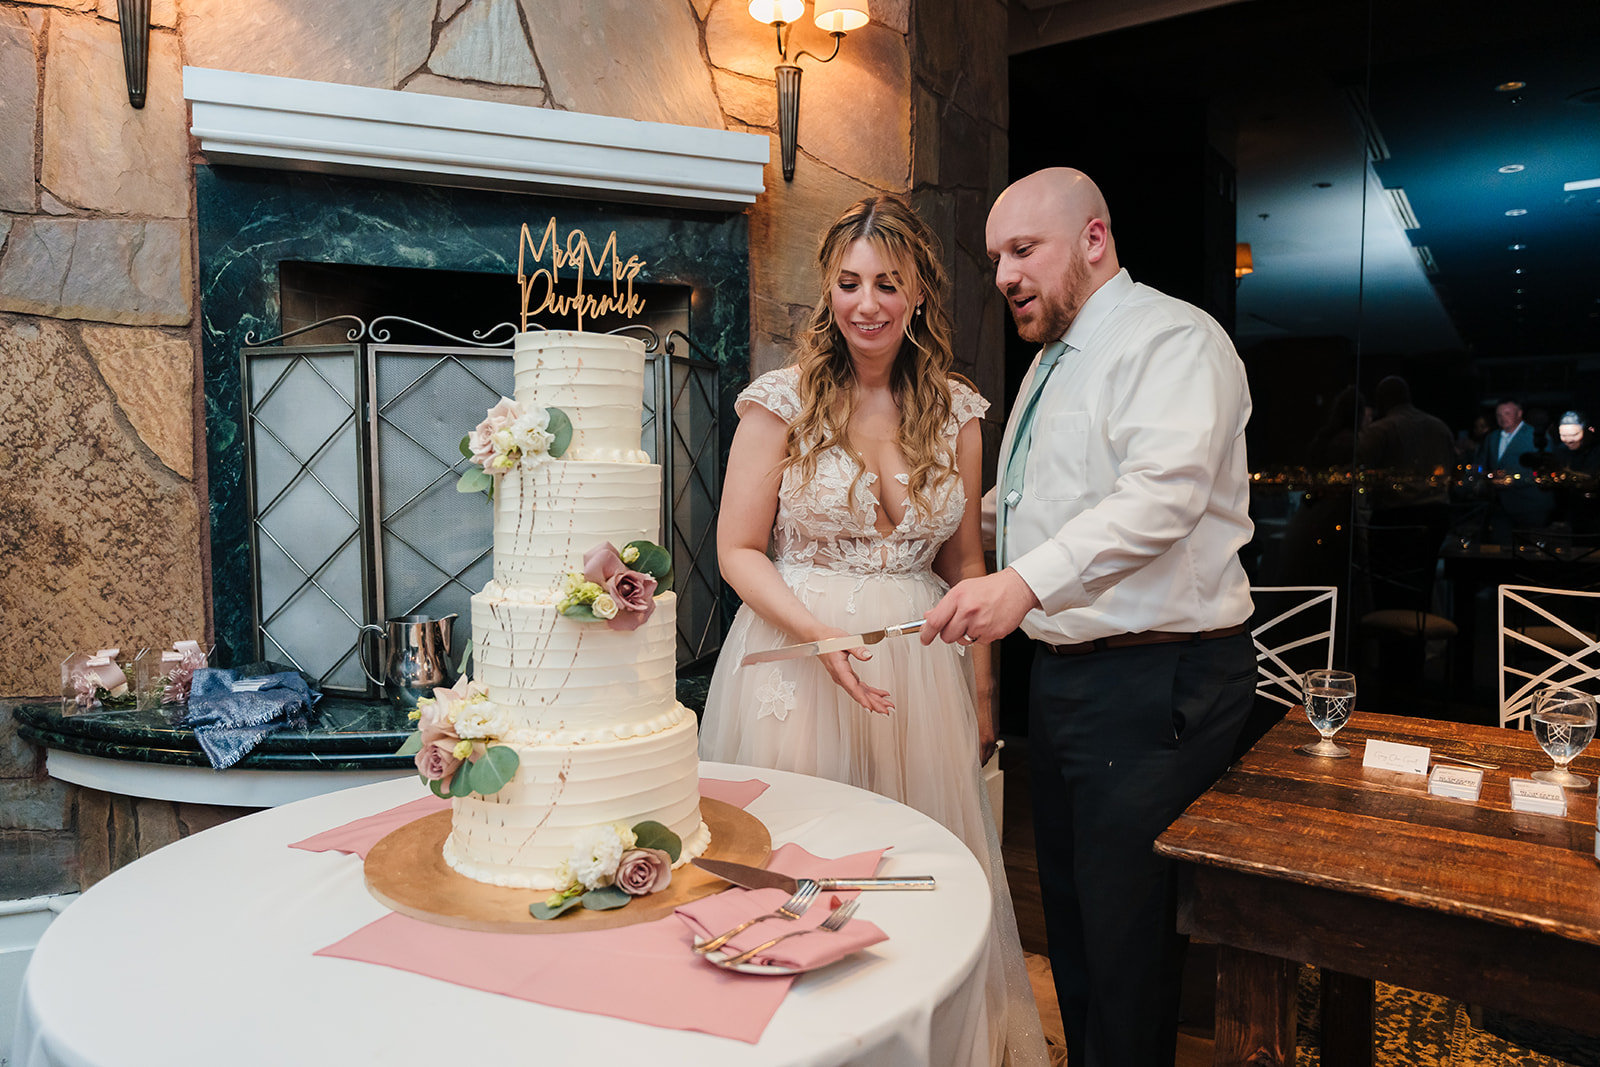 TOP 10 BEST WEDDING CAKE BAKERS IN LAS VEGAS, NV